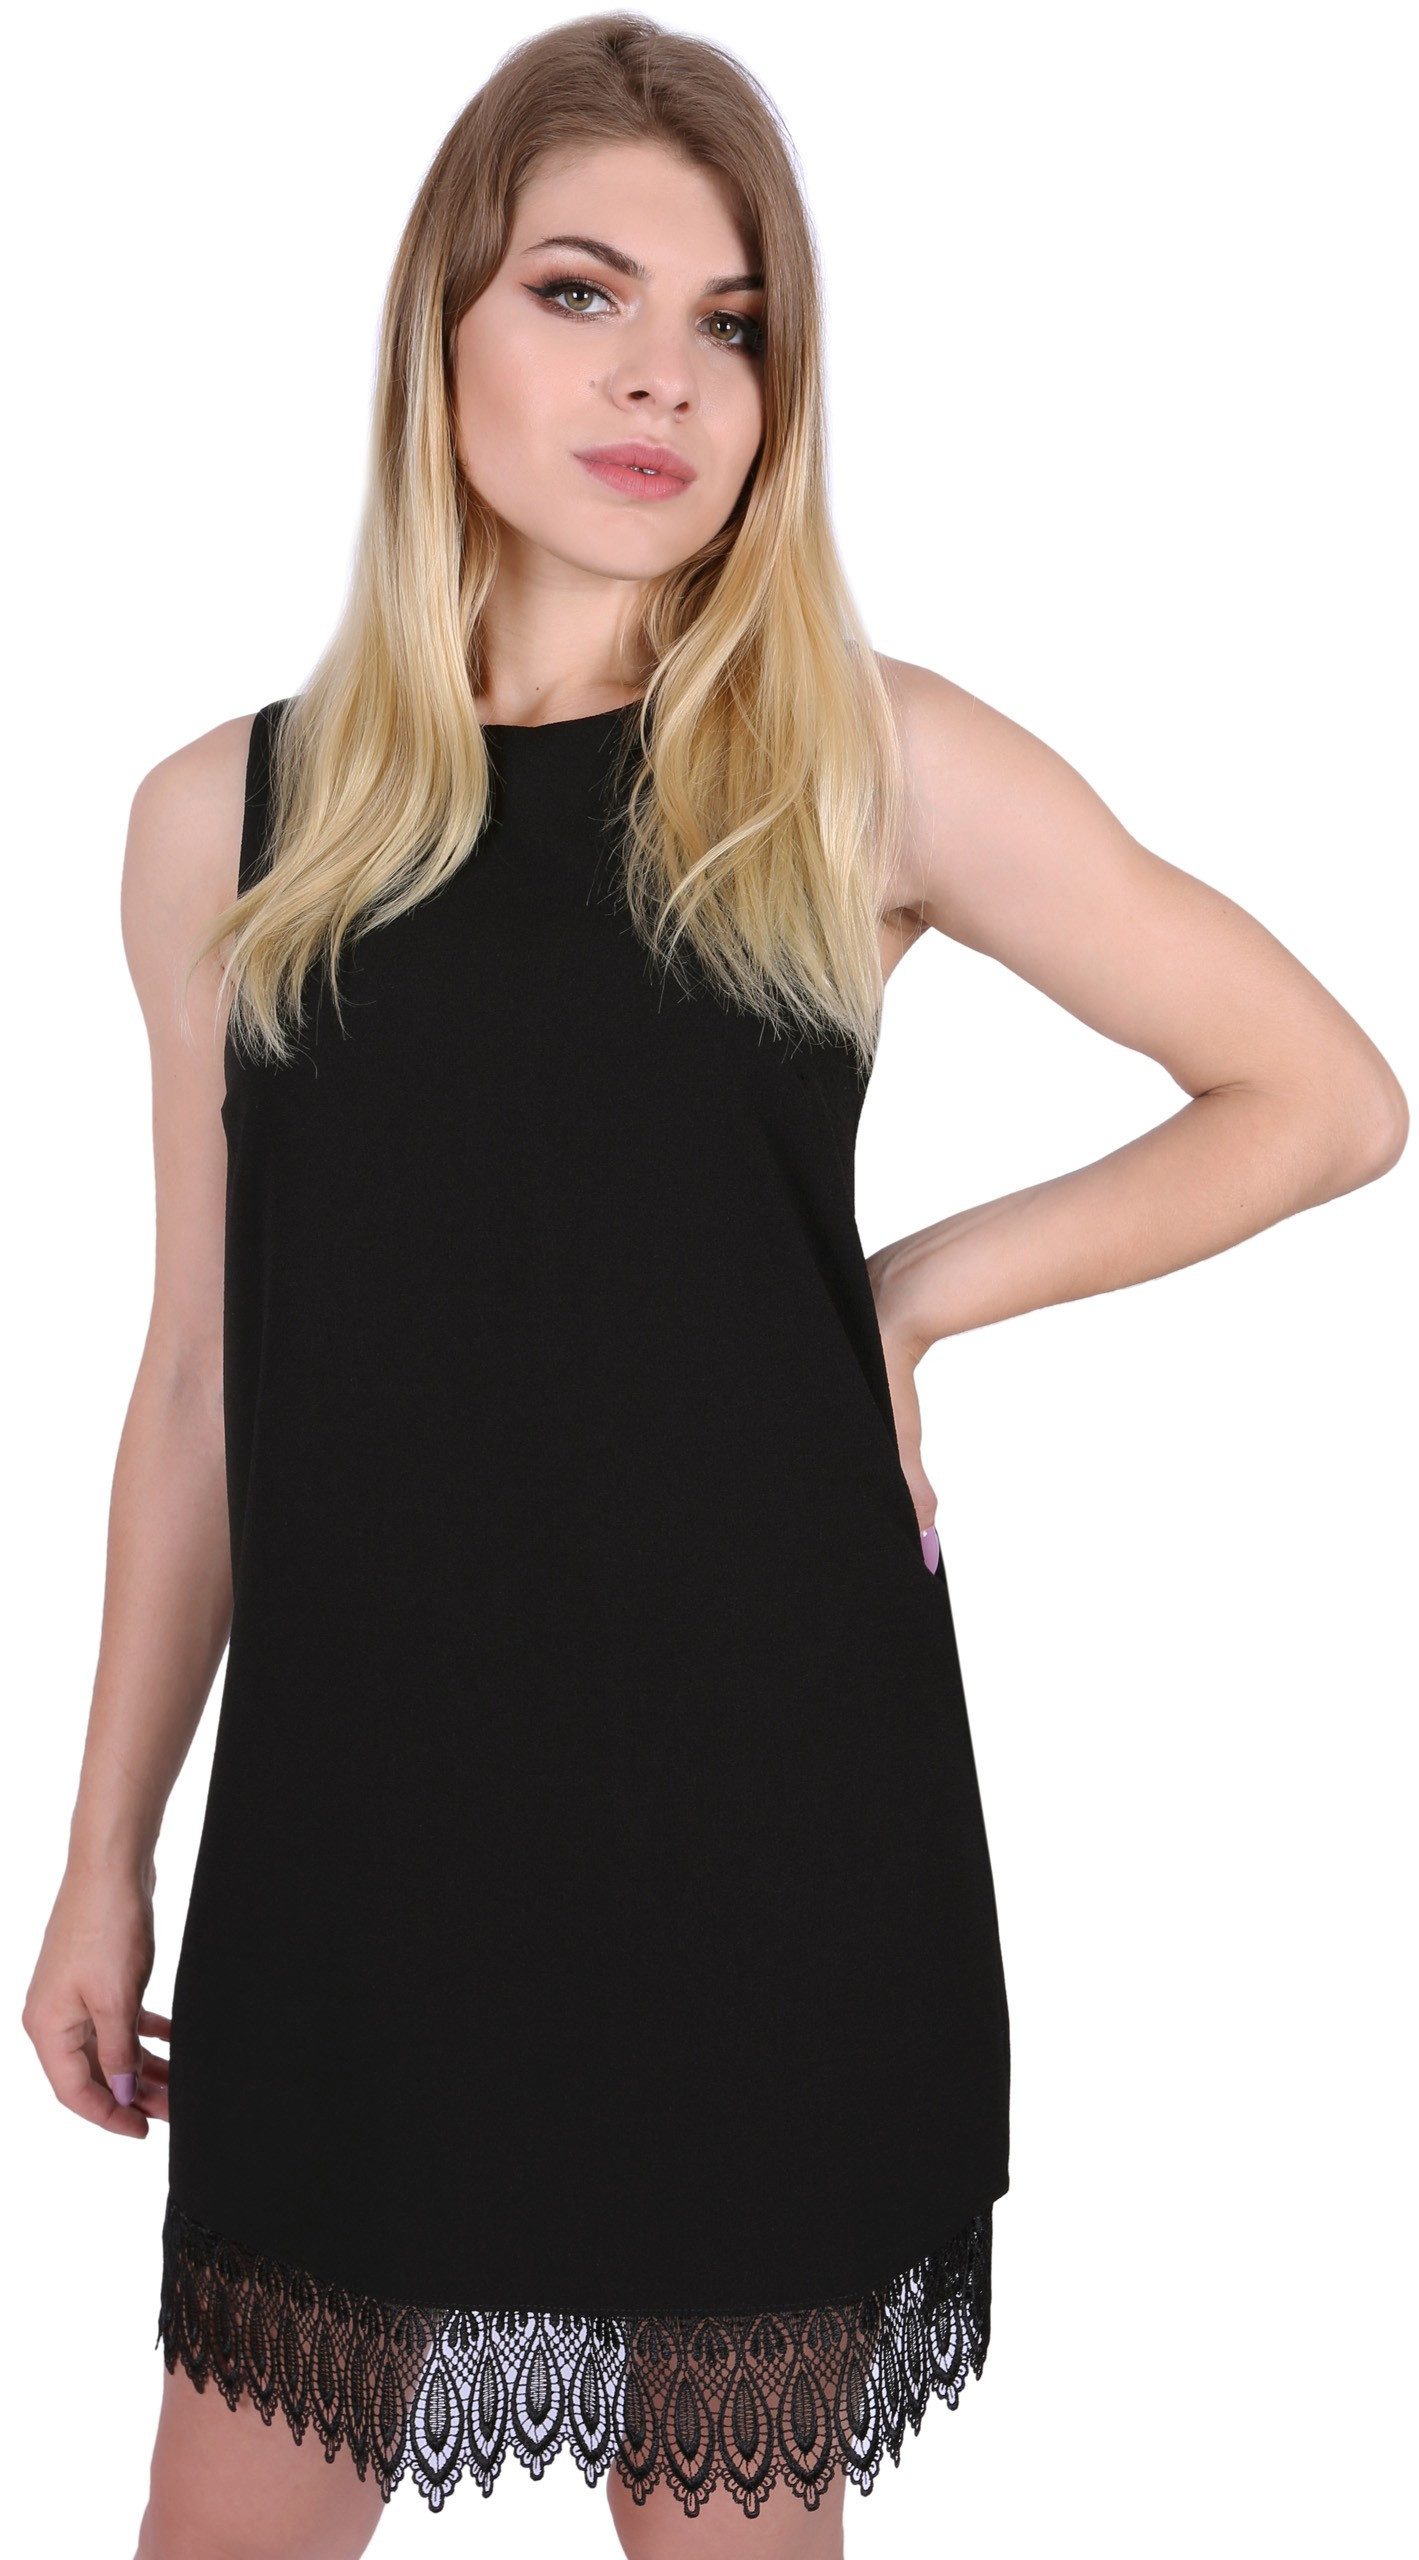 Sarcia.eu Minikleid Schwarzes Minikleid mit Details aus Spitze Sommerkleid elegant S